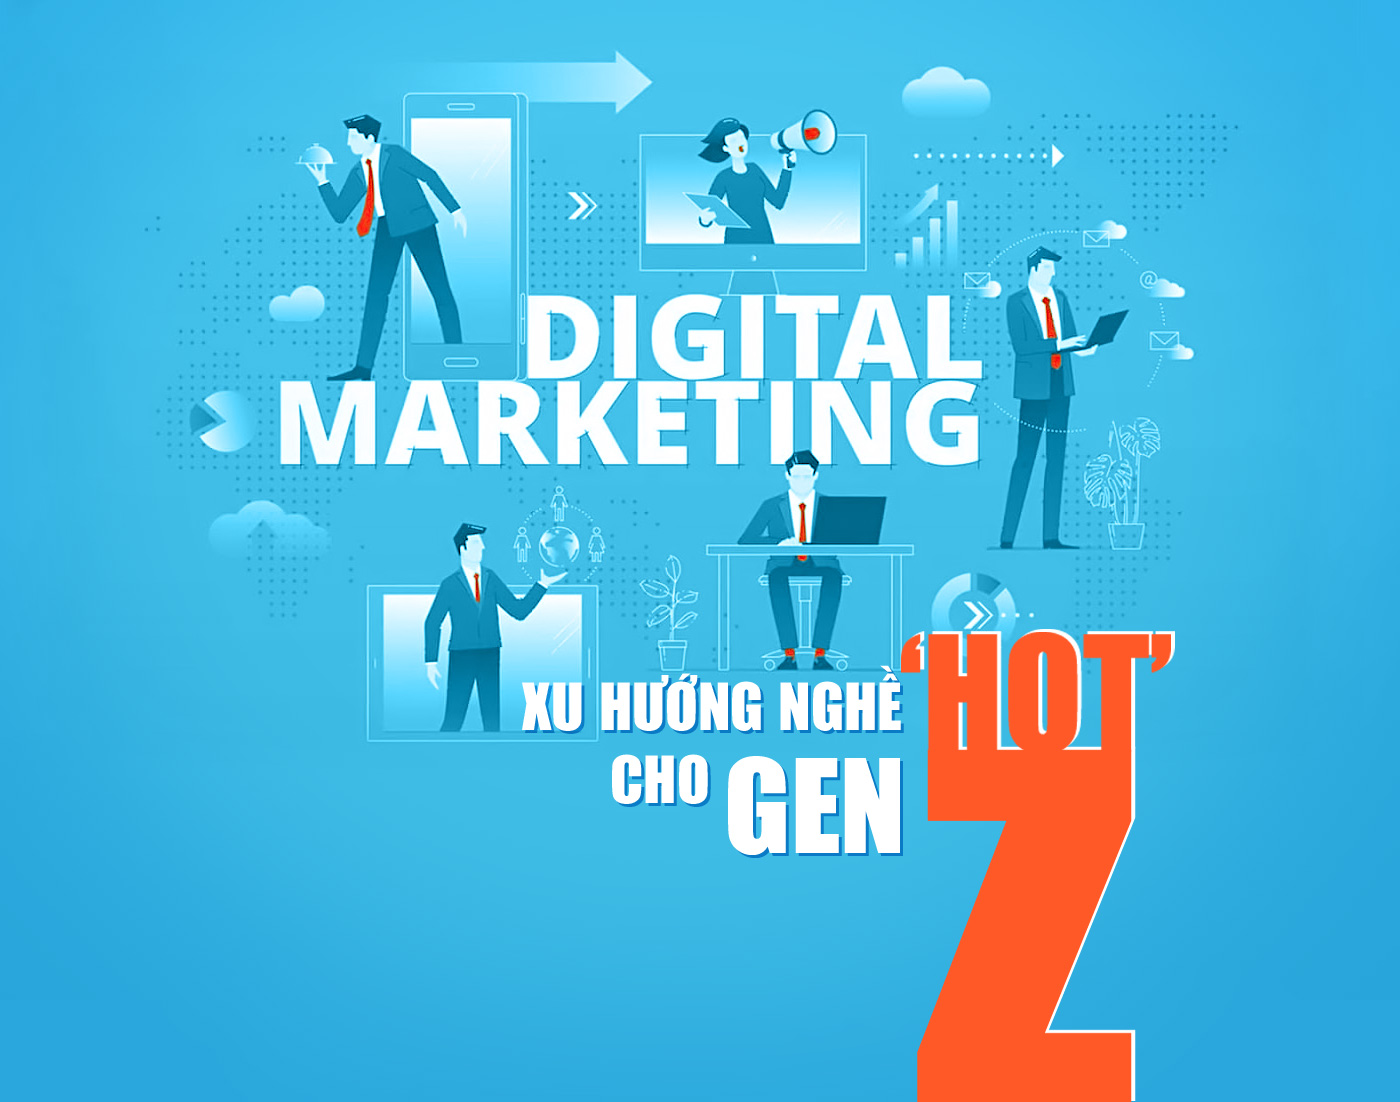 Digital Marketing - Xu hướng nghề hot cho Gen Z - Ảnh 1